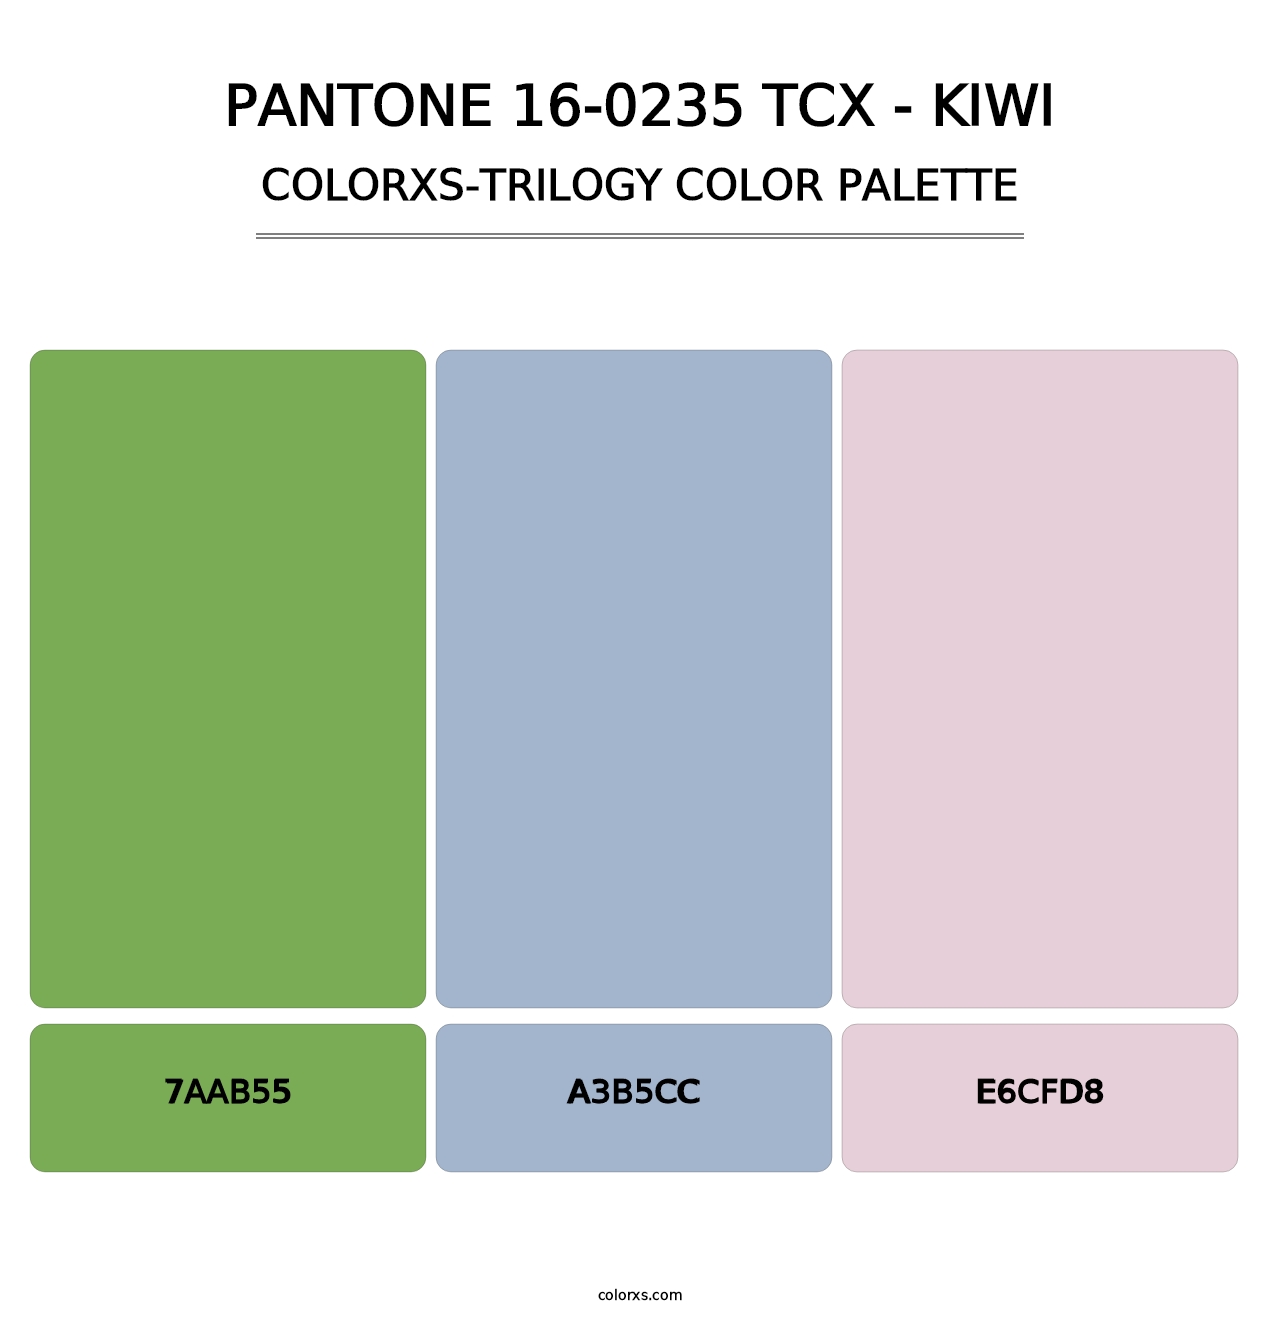 PANTONE 16-0235 TCX - Kiwi - Colorxs Trilogy Palette